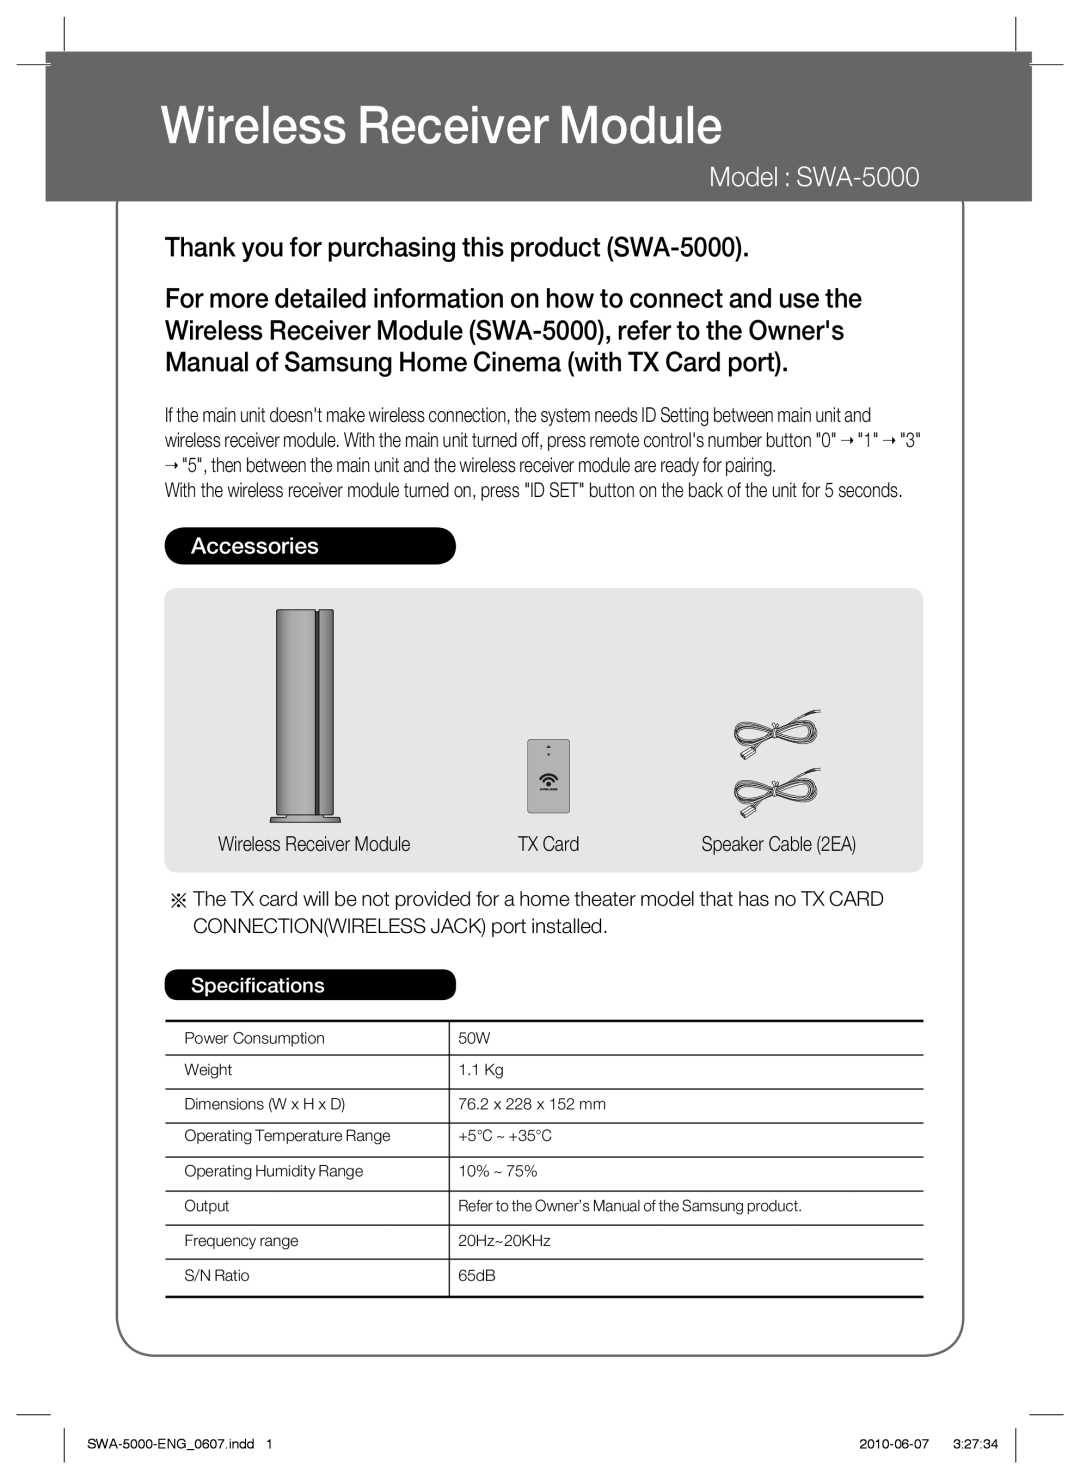 Samsung SWA-5000/XEF manual Module de réception sans fil, Modèle SWA-5000, Merci d’avoir acheté ce produit SWA-5000 